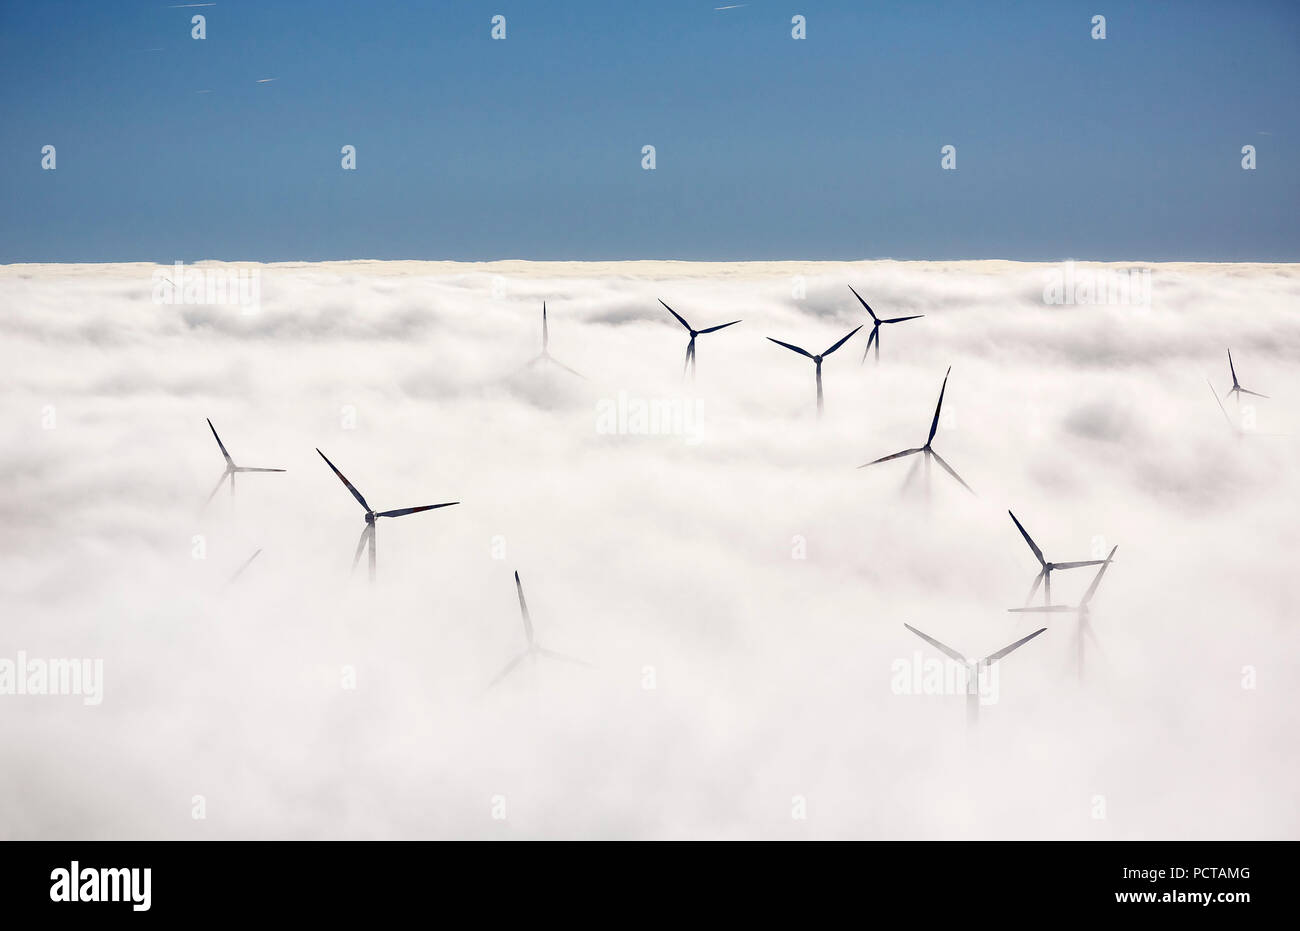 Las turbinas eólicas en una cubierta de nubes, el cielo azul, vista aérea de Marsberg, Sauerland Foto de stock